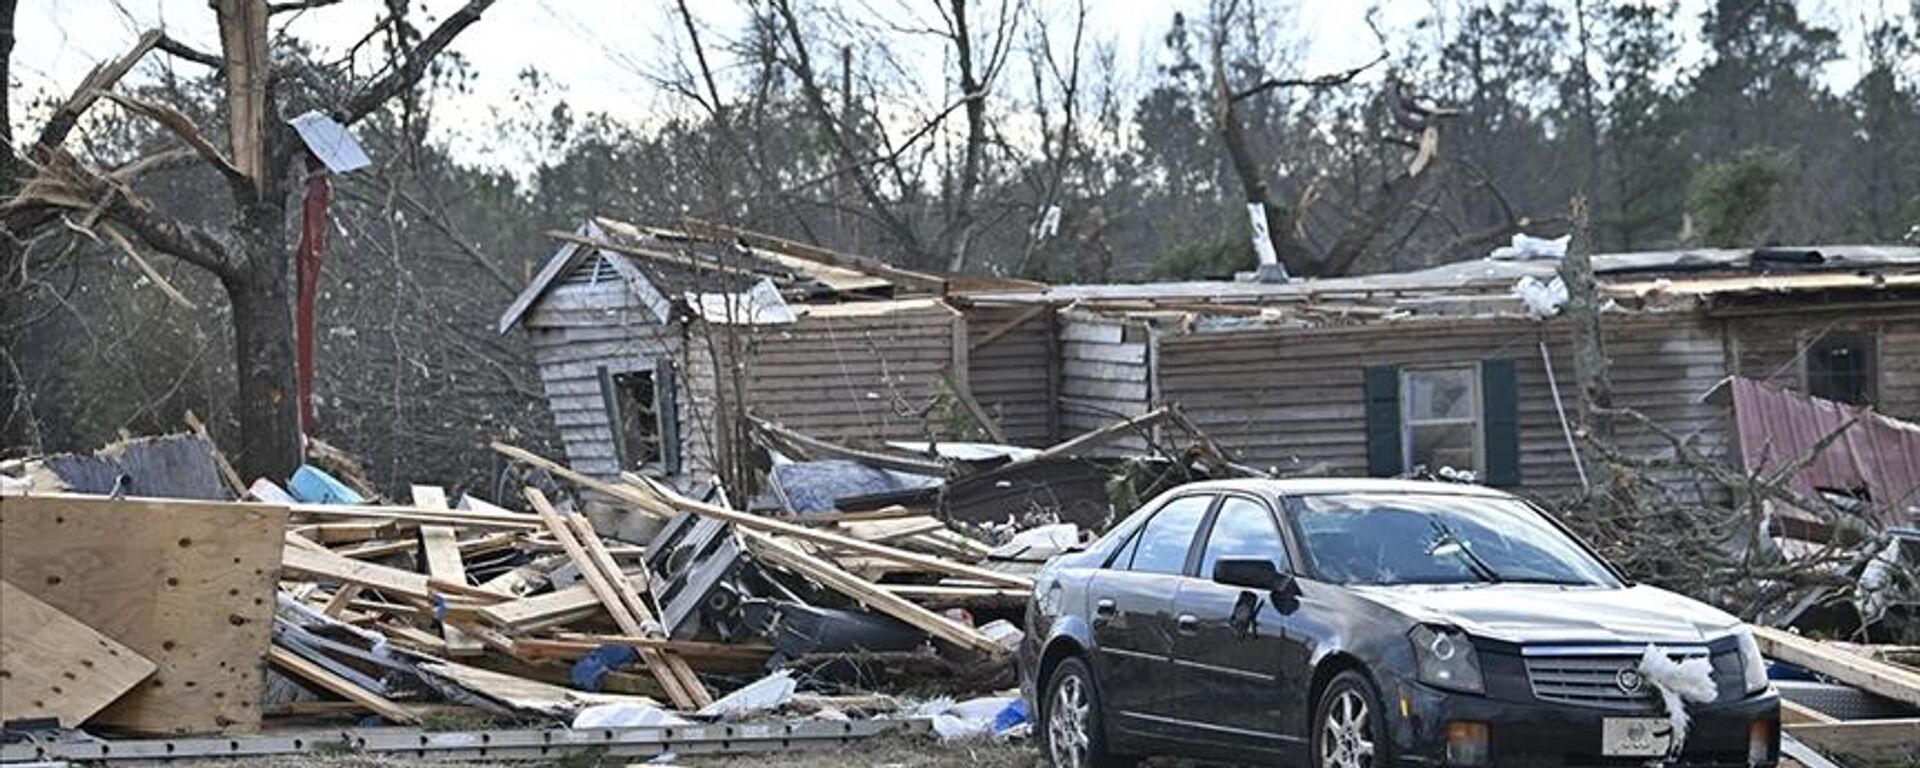 Arkansas'ta yoğun yağışın ardından oluşan sele kapılan bir kişi, Tennessee'de de yine ağaçların şiddetli rüzgarla devrilmesi sonucu 2 kişi öldü. Fırtınanın yoğun şekilde etkili olduğu Kentucky'nin üç ilçesinde 3 kişi yaşamını yitirdi. - Sputnik Türkiye, 1920, 05.03.2023